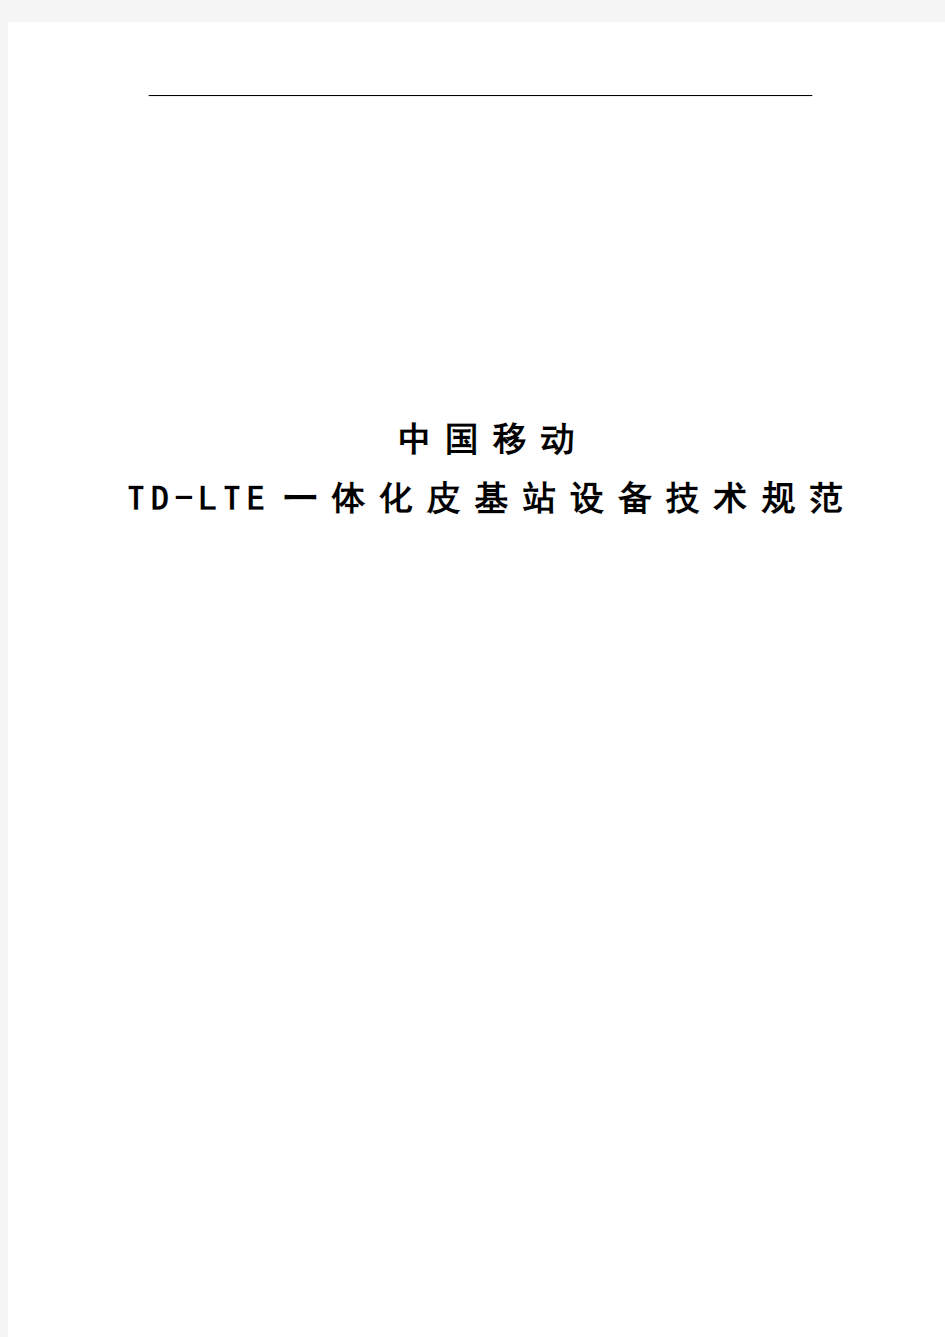 2015年中国移动TD-LTE一体化皮基站设备技术规范.